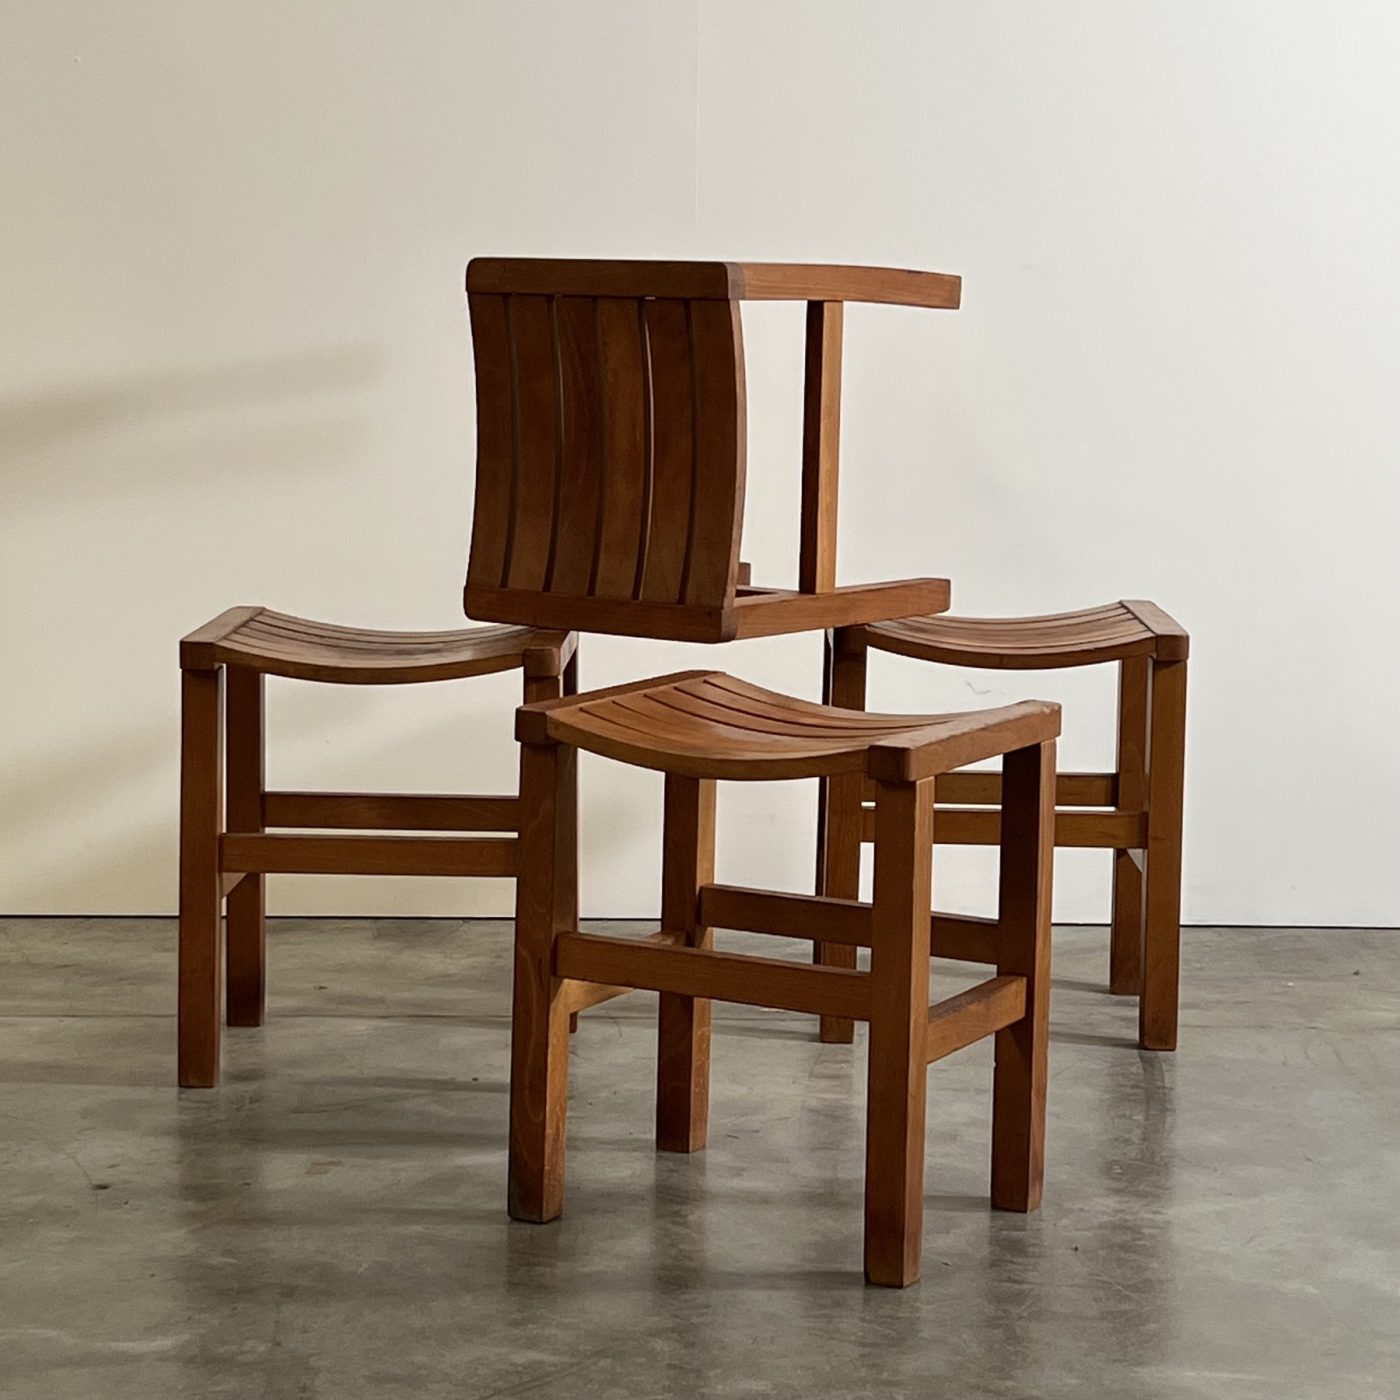 objet-vagabond-vintage-stools0000